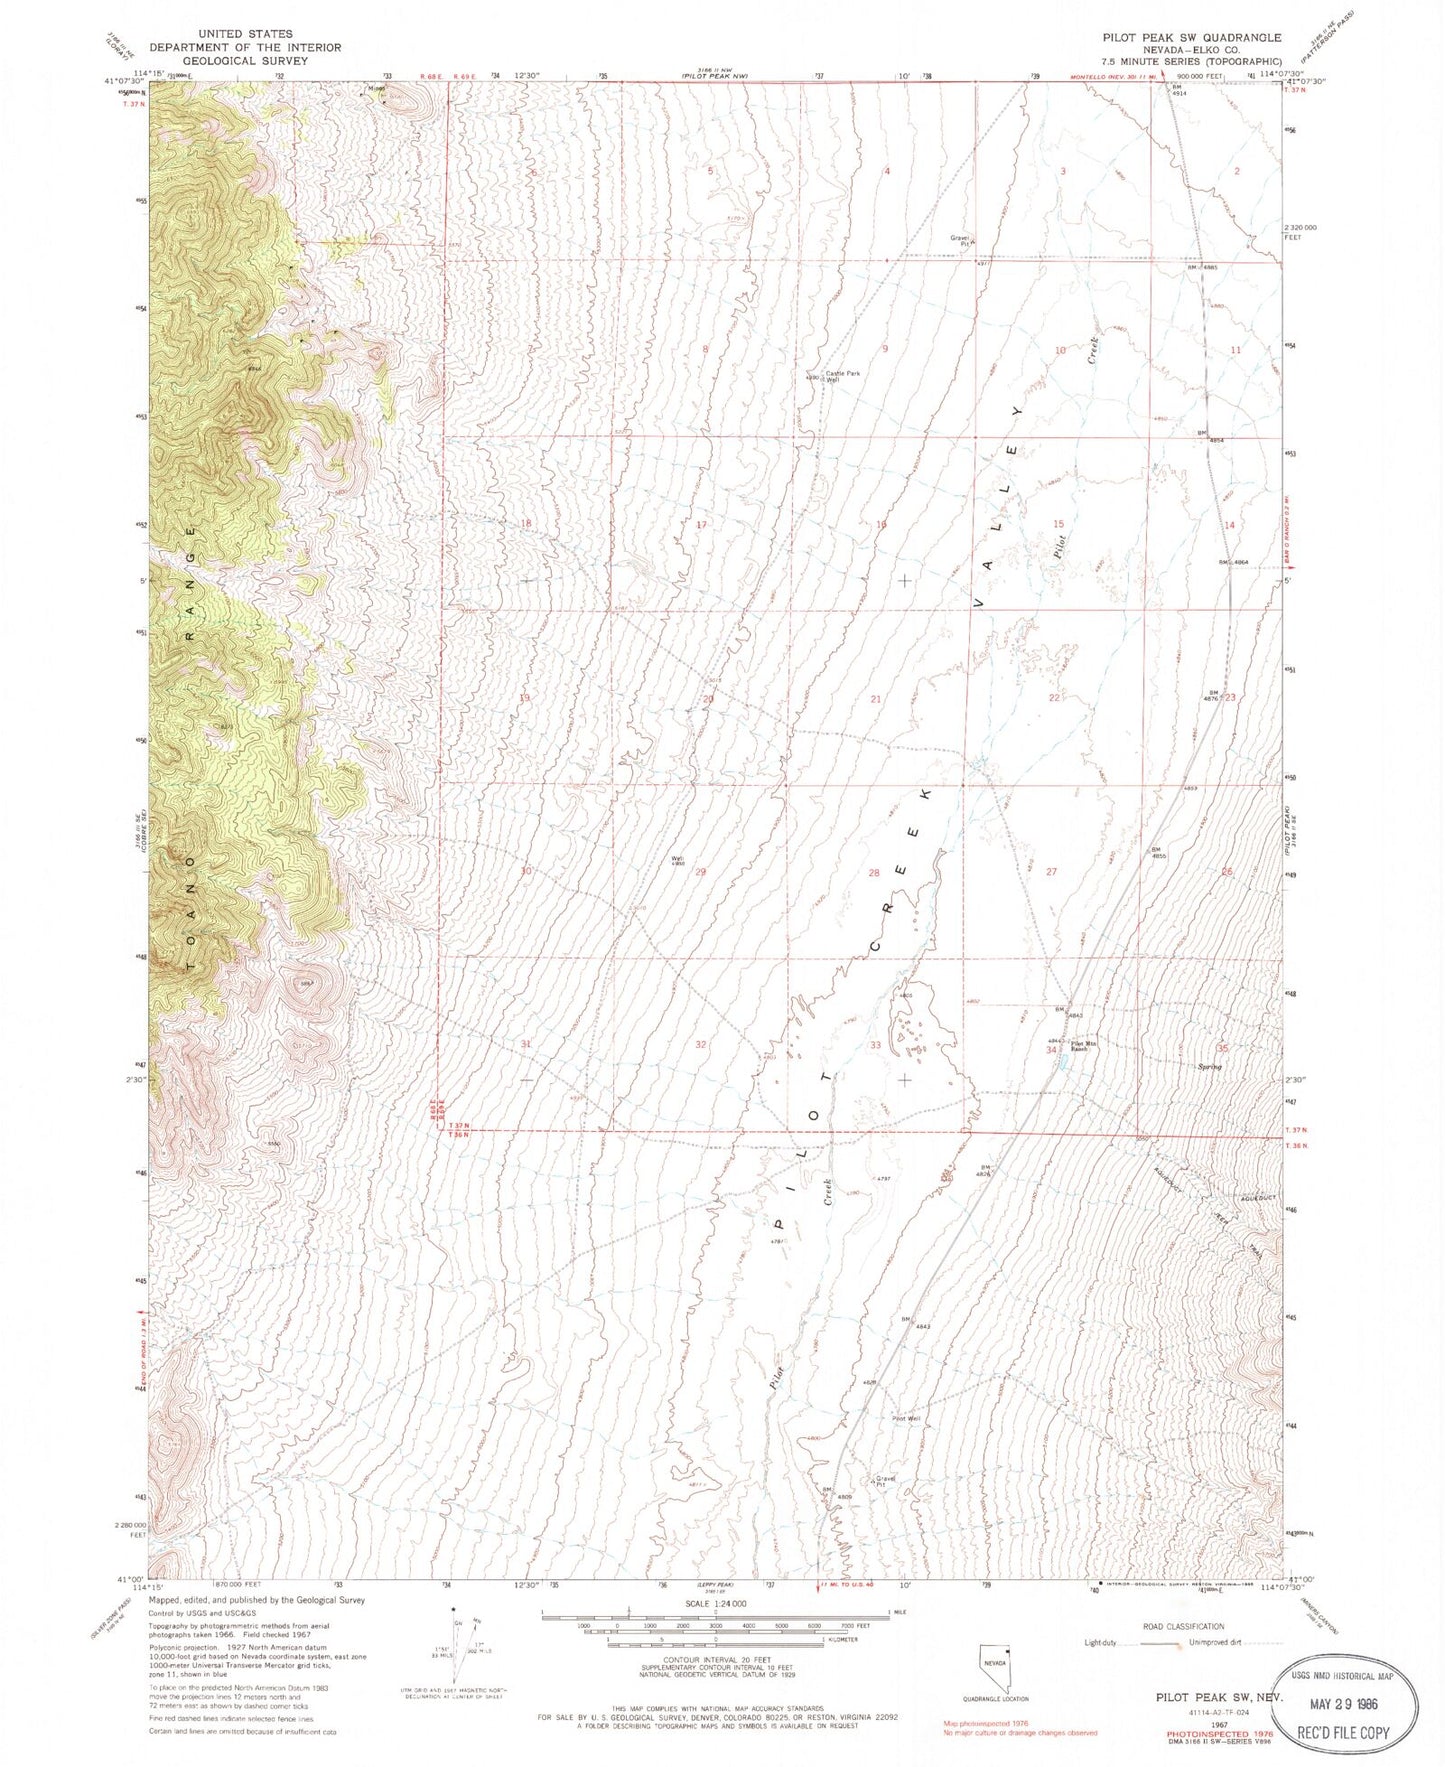 Classic USGS Pilot Peak SW Nevada 7.5'x7.5' Topo Map Image